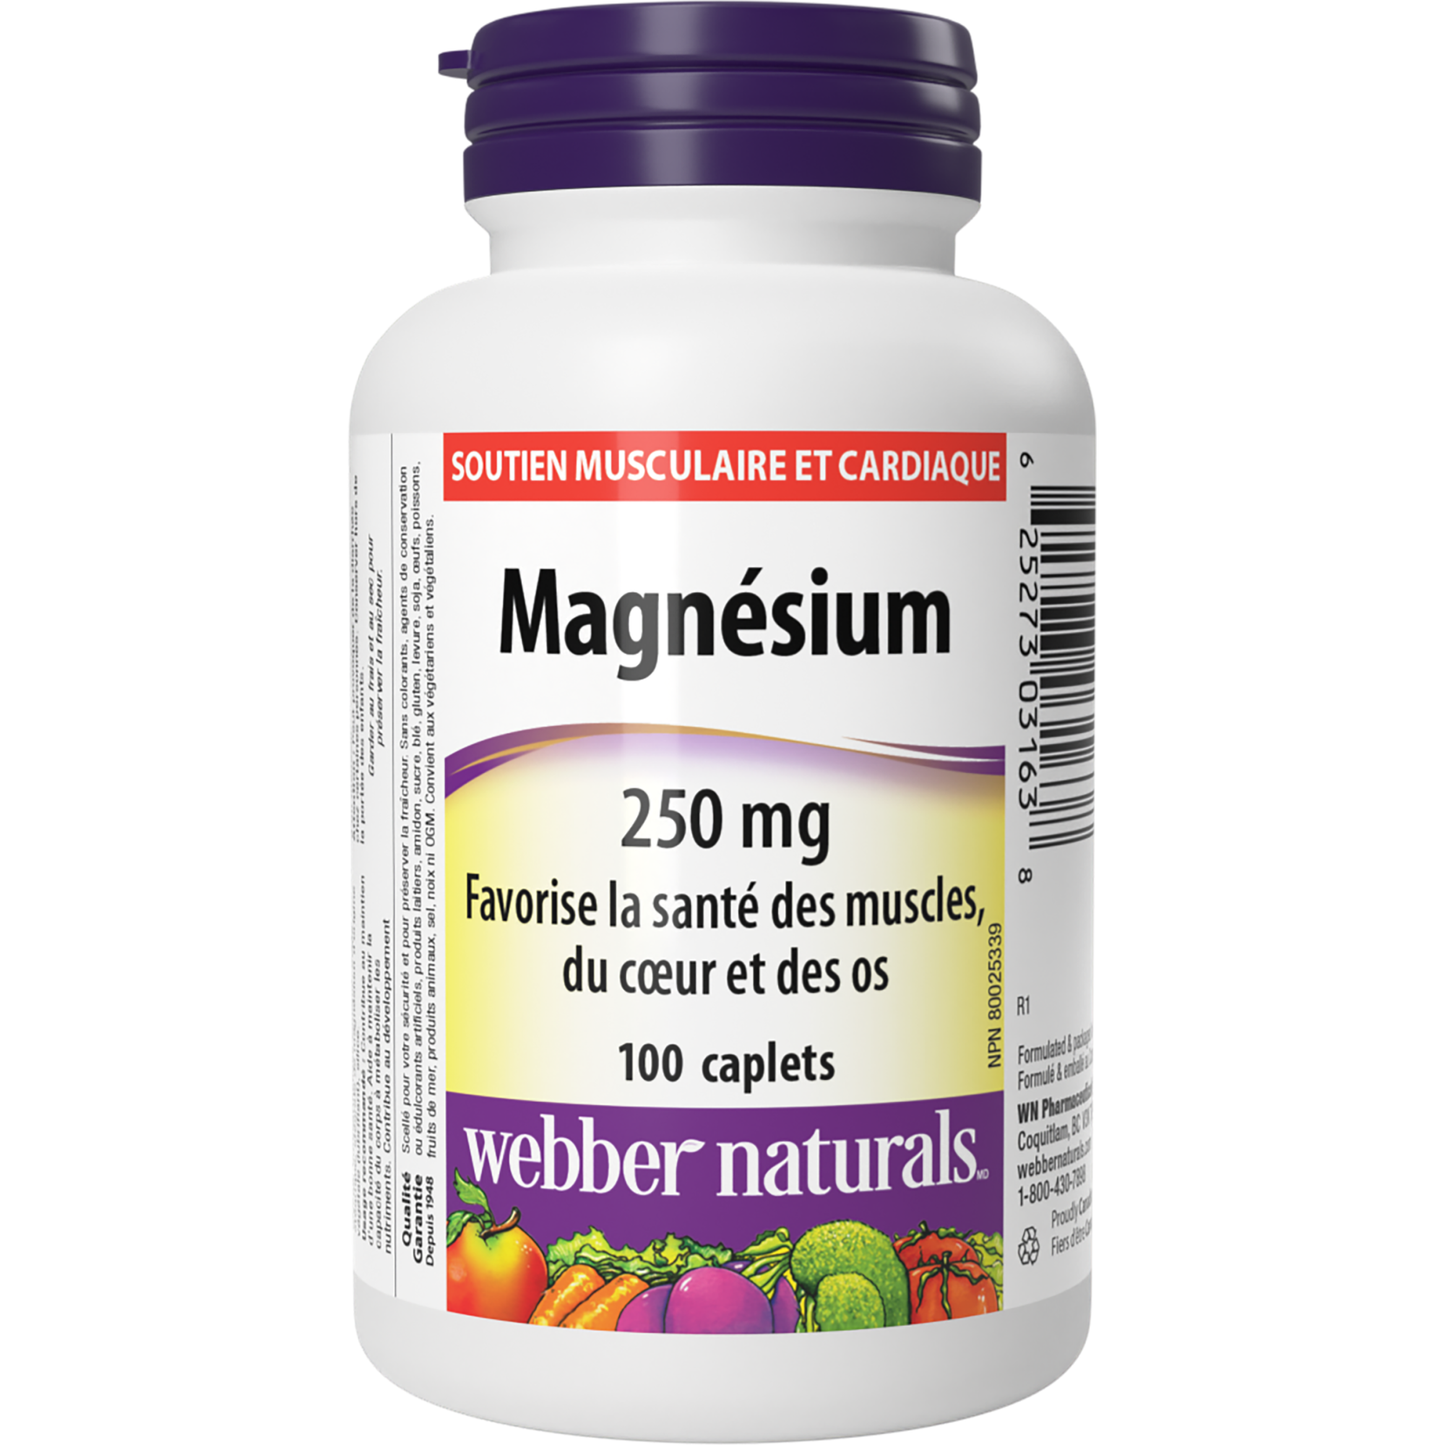 Magnésium 250 mg for Webber Naturals|v|hi-res|WN3163